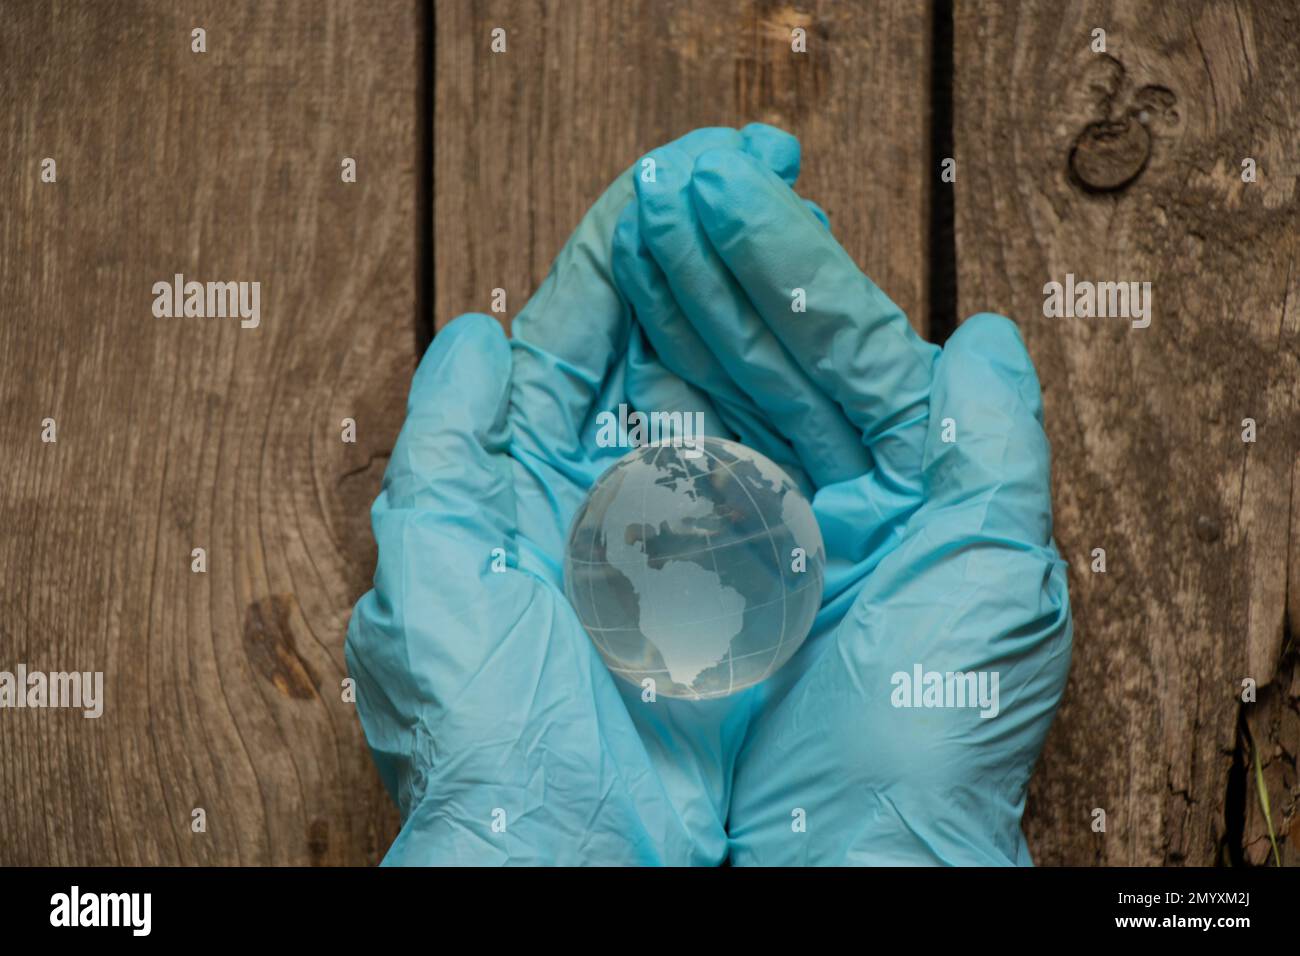 Hände in medizinischen Handschuhen mit einem Globus Stockfoto